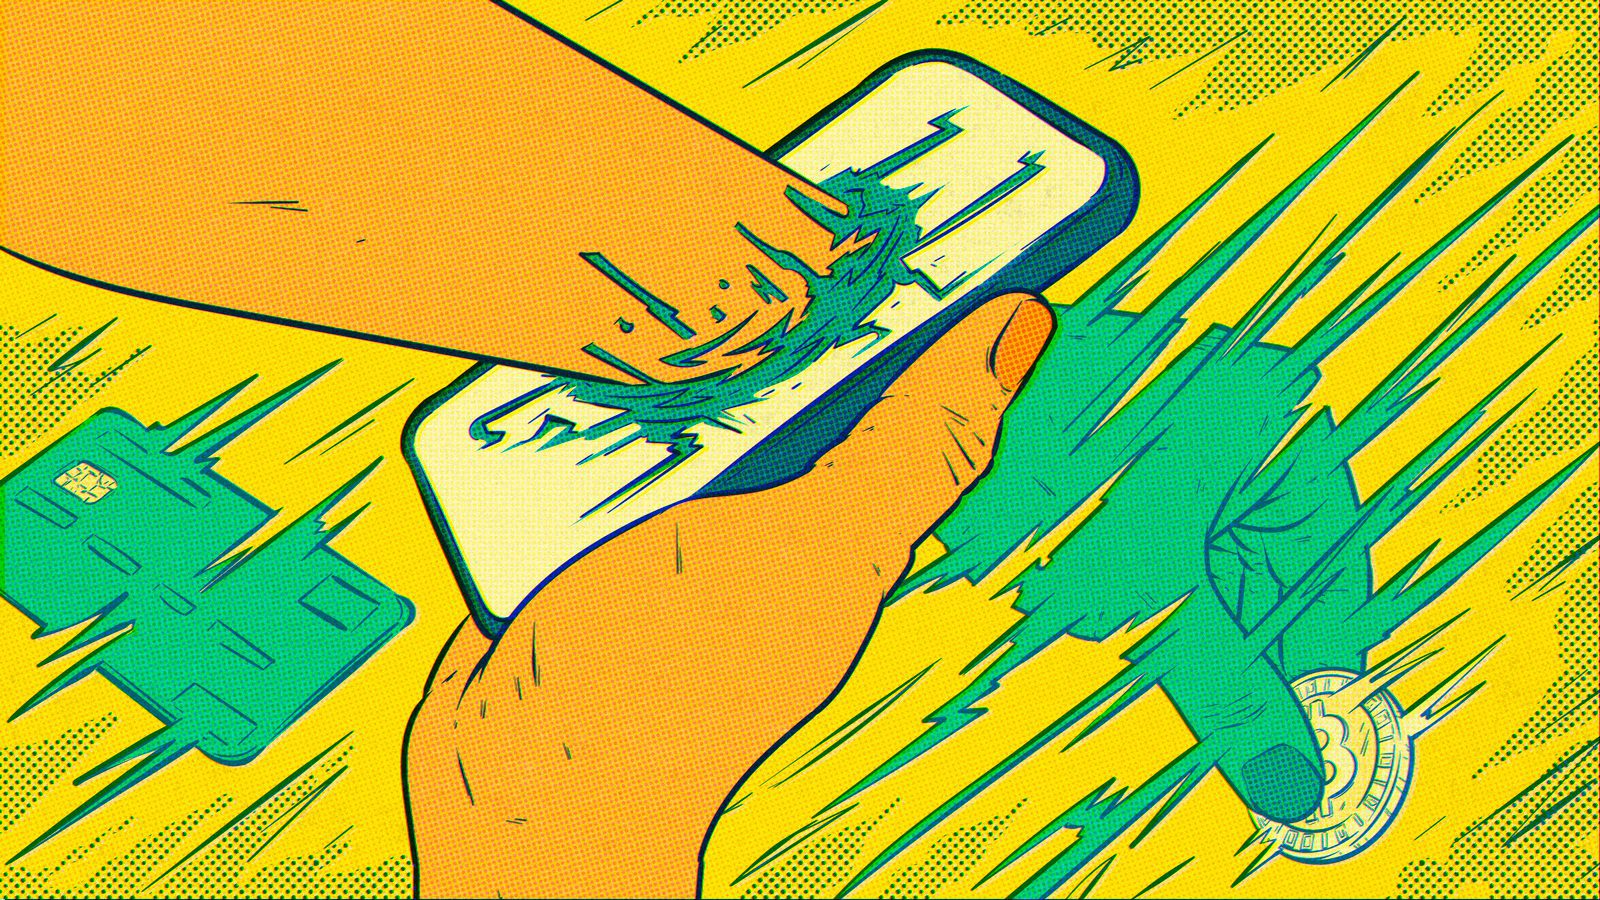 Ilustração abstrata sobre tecnologia em finanças. Uma mão atravessa a tela de um celular e segura uma criptomoeda entre os dedos enquanto um cartão de crédito se digitaliza à esquerda.